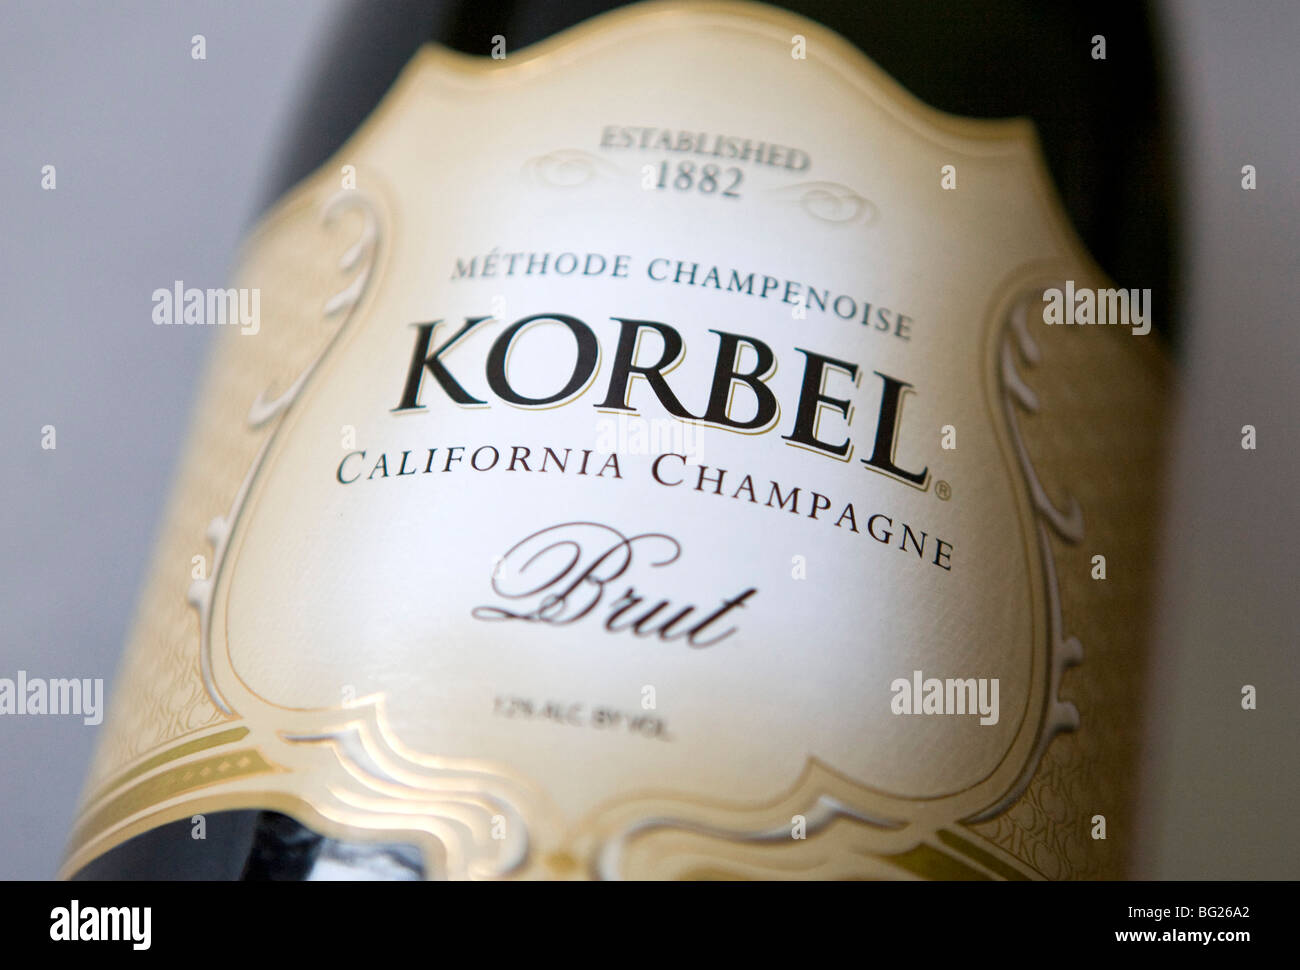 Bouteilles de champagne de Californie. Californie vin mousseux décideurs sont actuellement le seul producteur au monde à l'extérieur de la région de la champagne de france qui peuvent appeler leur produit "champagne" tant qu'ils comprennent l'emplacement où il a été produit sur l'étiquette Banque D'Images